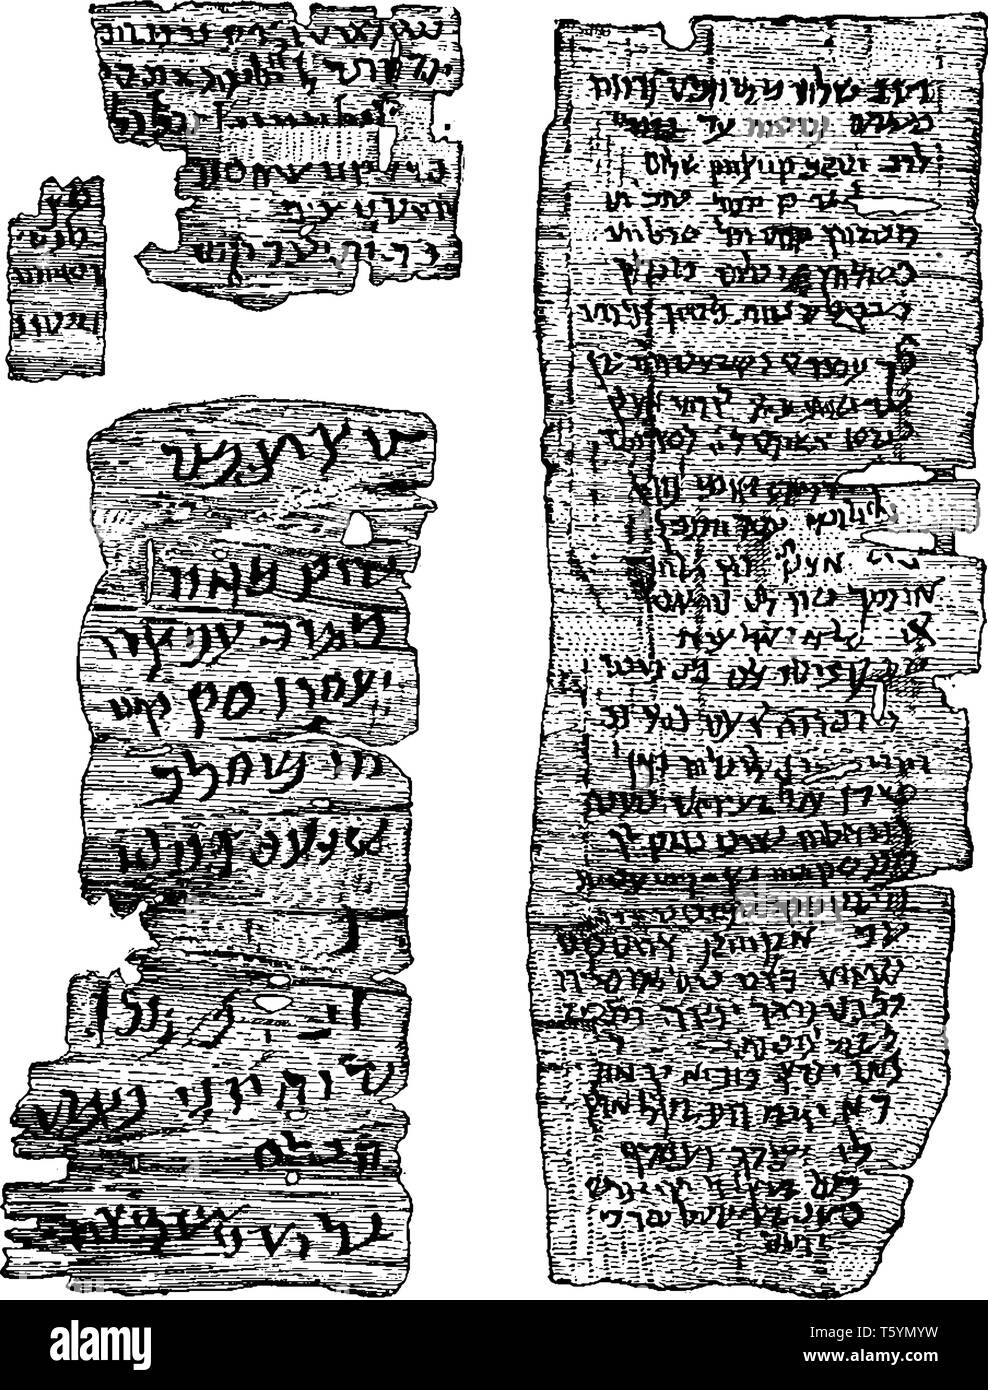 L'hébreu ancien manuscrit, qui a été découvert en Égypte, vintage dessin ou gravure illustration. Illustration de Vecteur